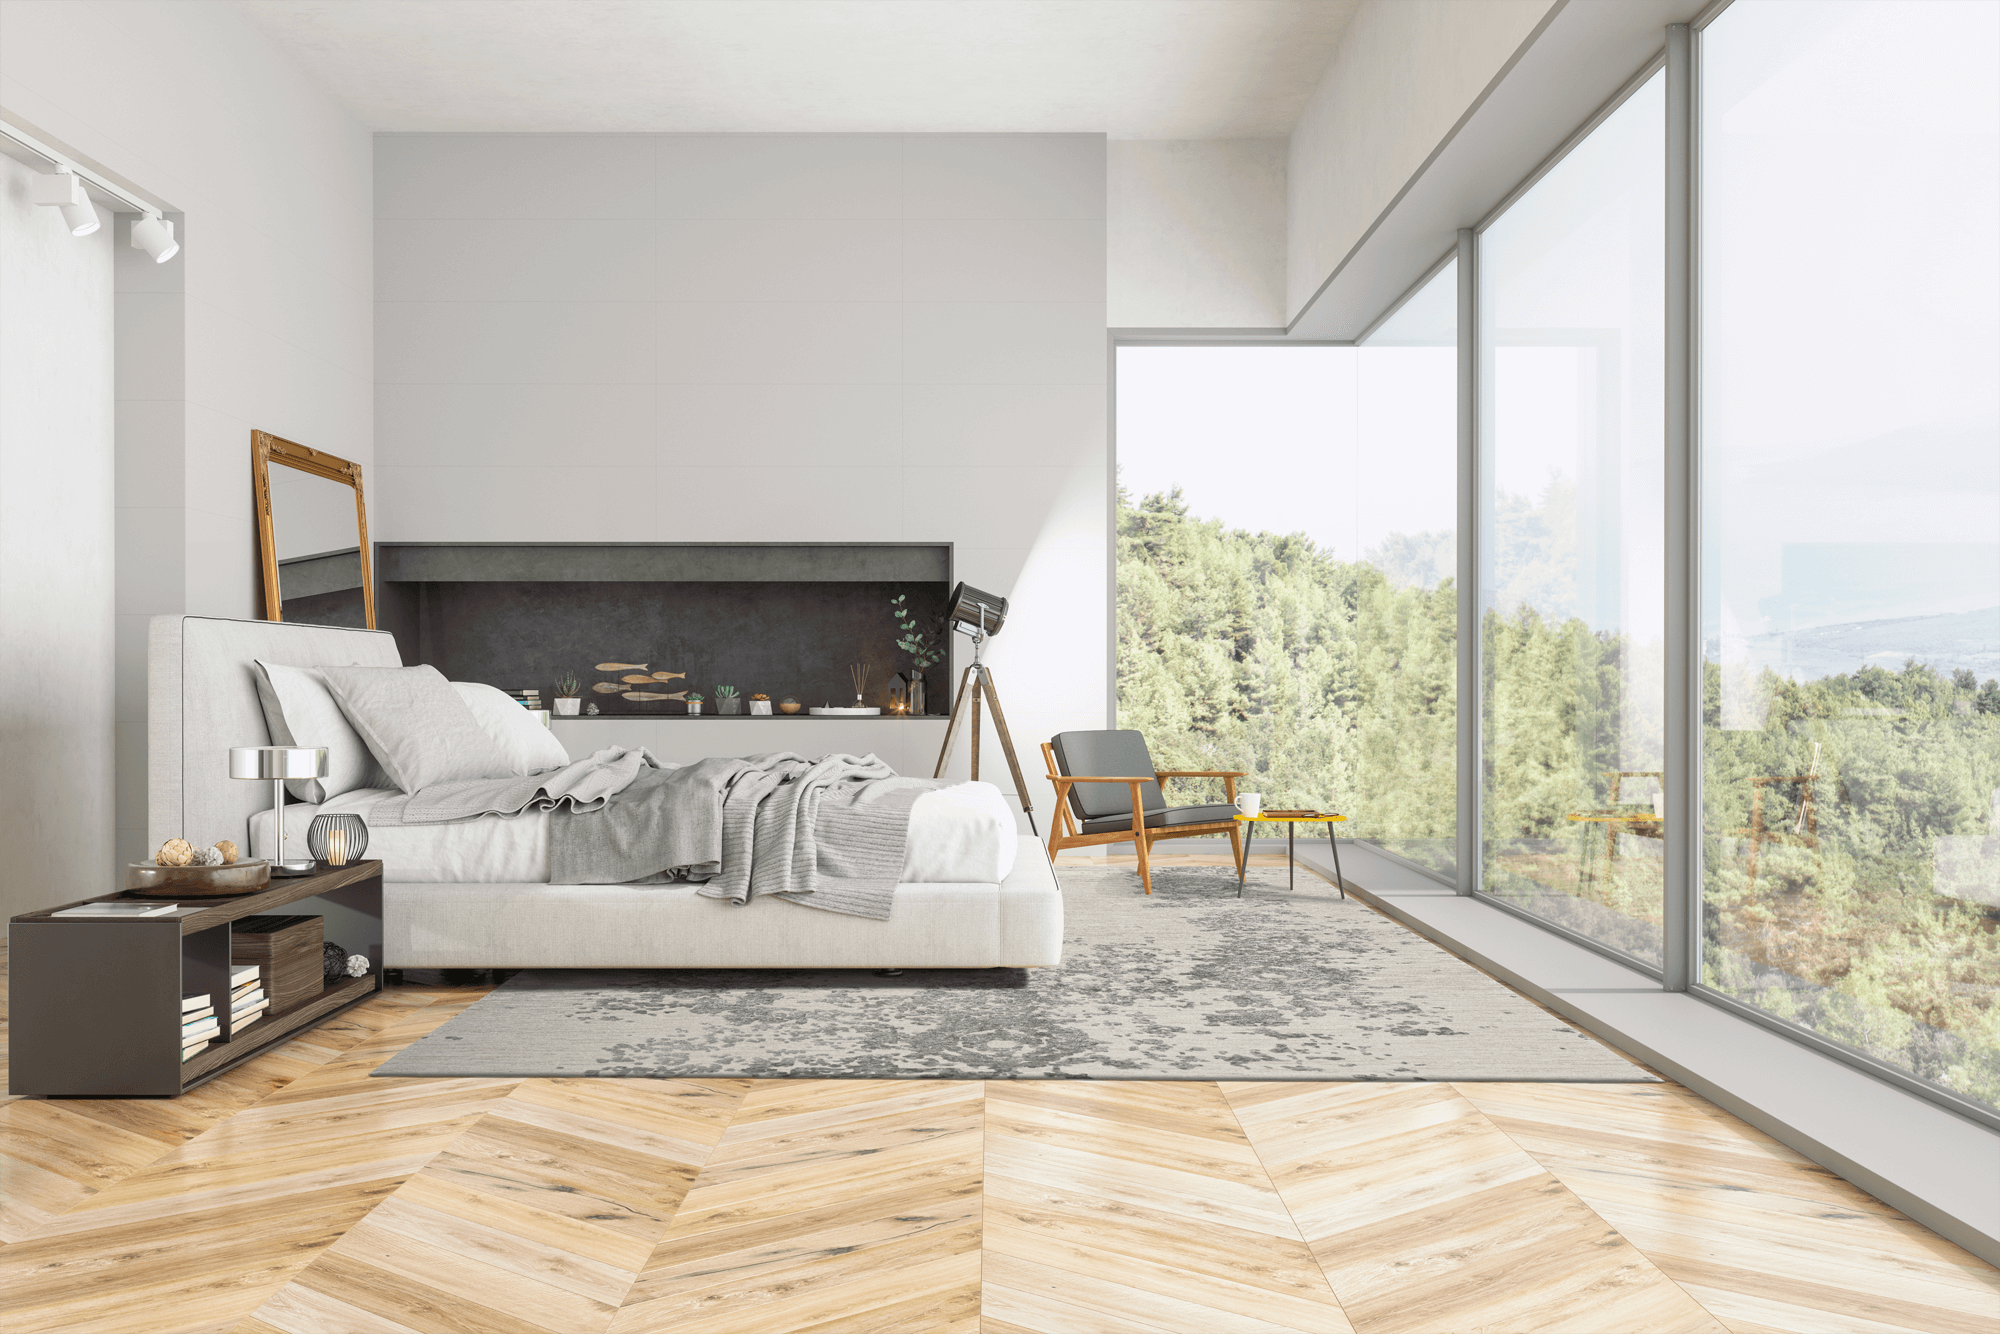 Schlafzimmer in modernem Haus und schöner Aussicht, große Glasfläche und Geba Teppich "Vintage grey" - Geba Teppich